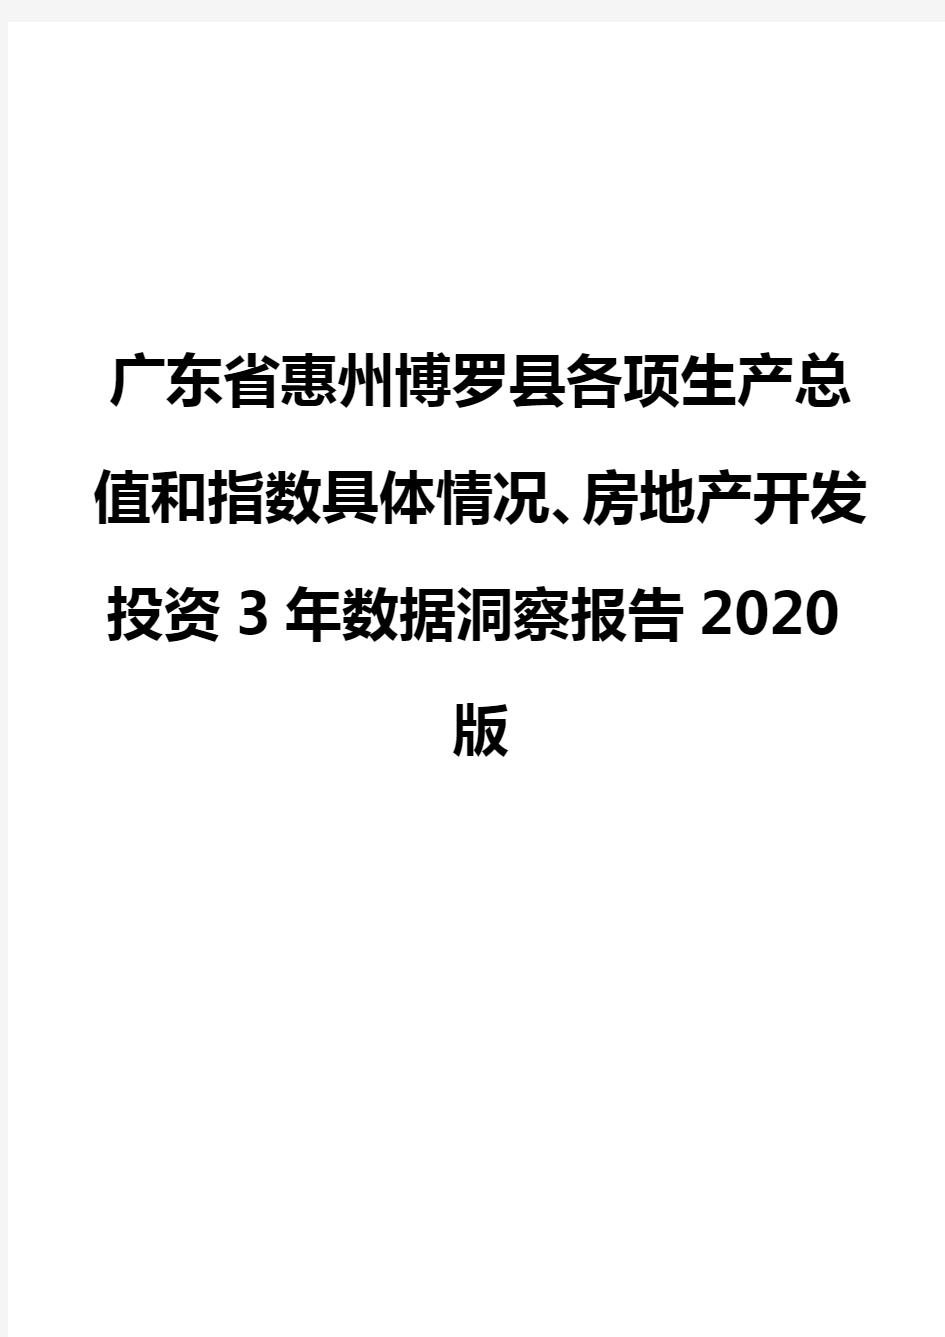 广东省惠州博罗县各项生产总值和指数具体情况、房地产开发投资3年数据洞察报告2020版